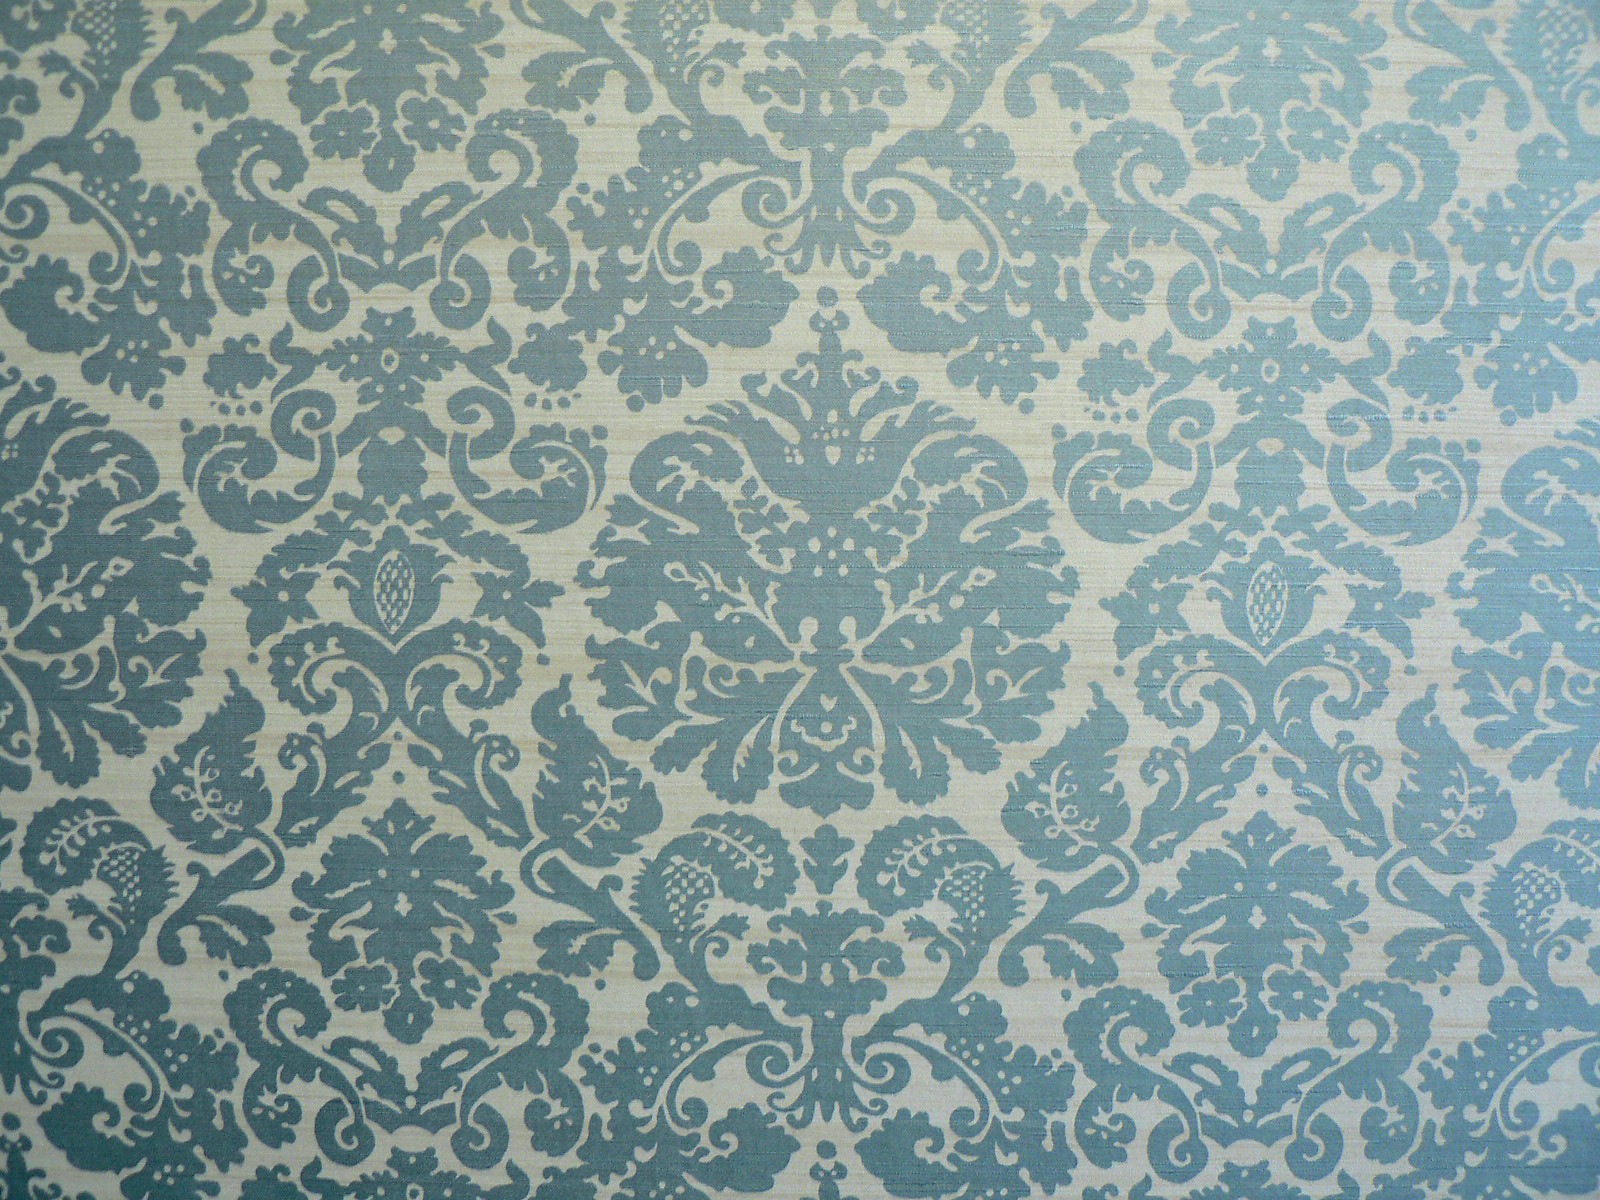 클래식 벽지 패턴,무늬,푸른,아쿠아,초록,터키 옥